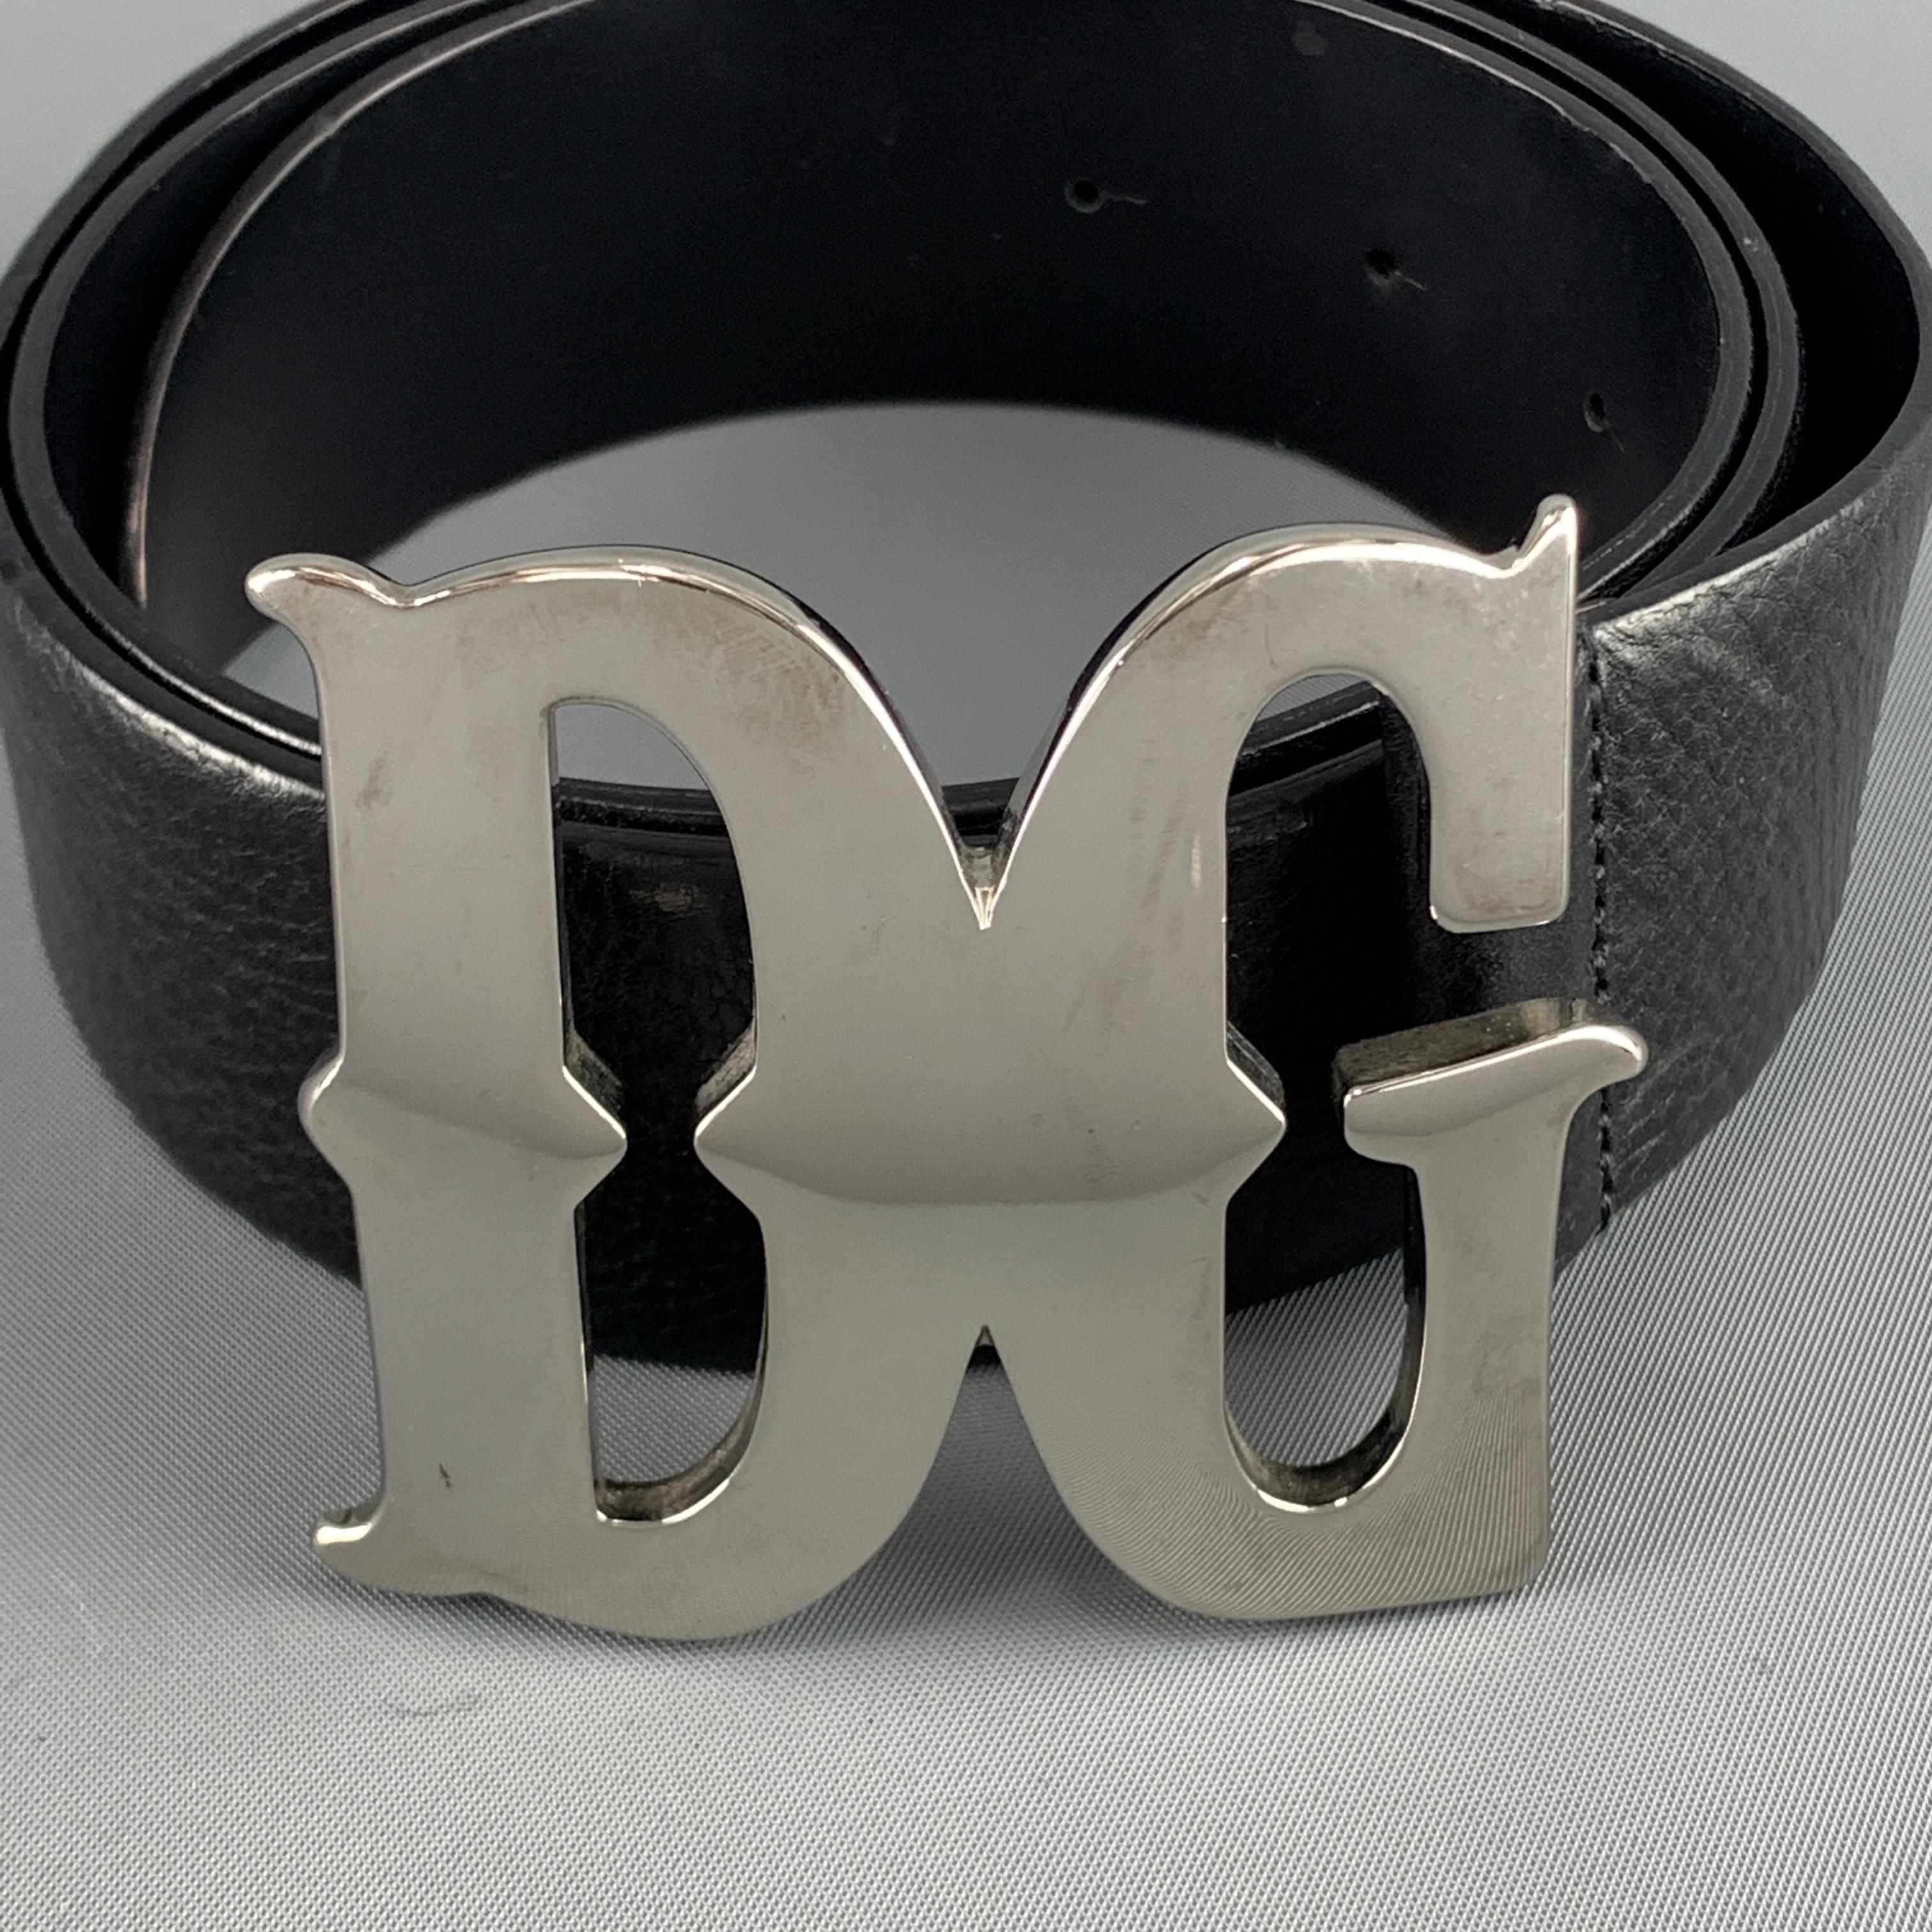 Accessoires Riemen & bretels Riemgespen Trendy Western Oval Silver/Gold  Belt Buckle with genuine leather belt 